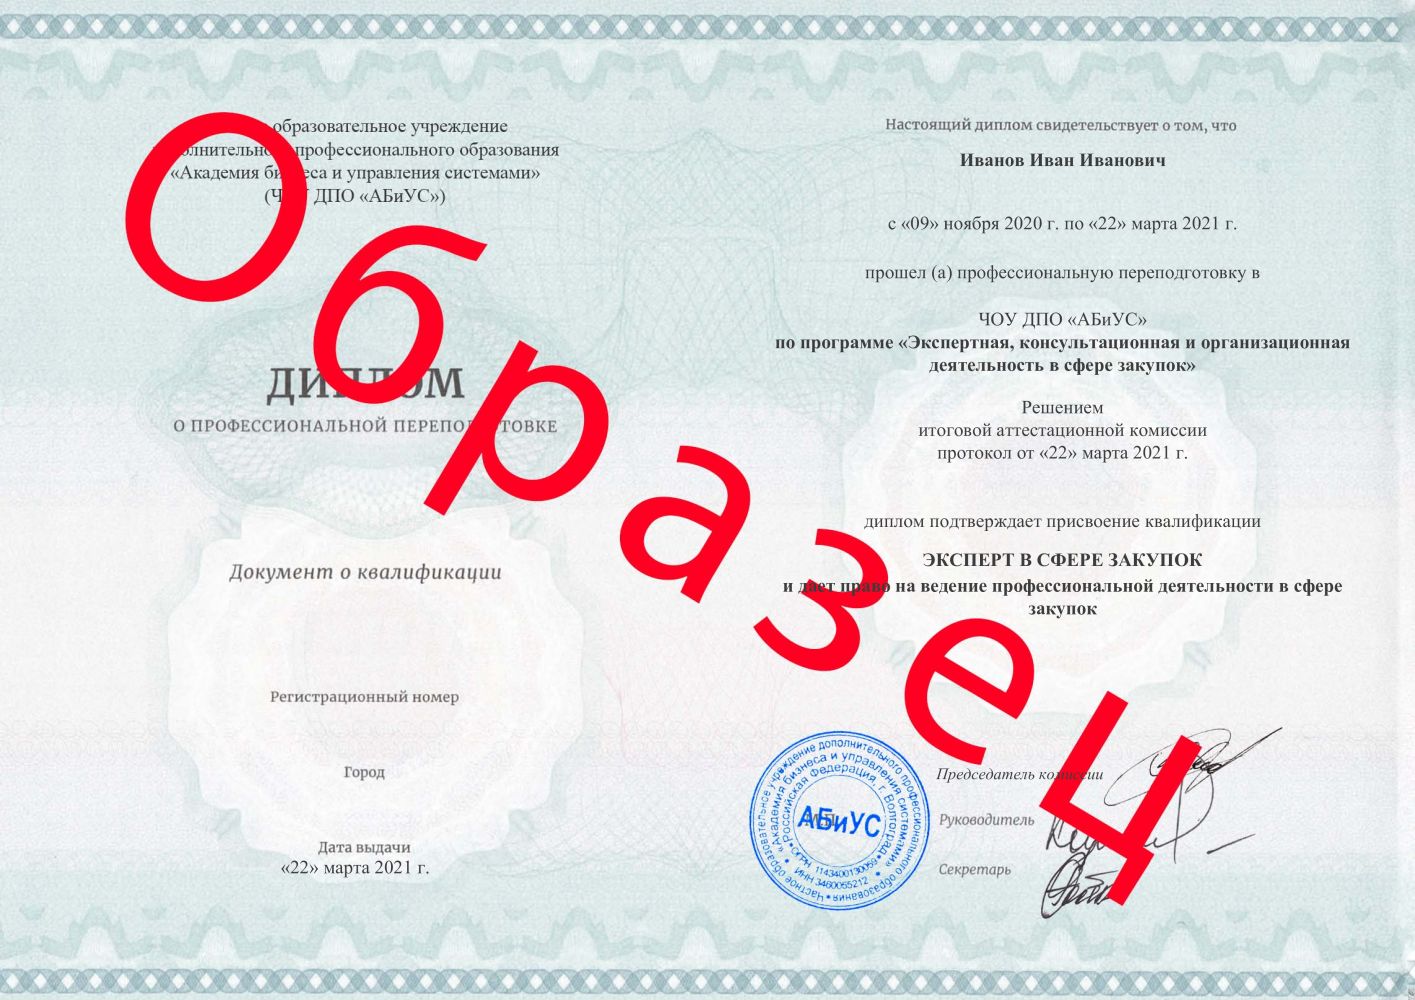 Диплом Экспертная, консультационная и организационная деятельность в сфере закупок 500 часов 18375 руб.